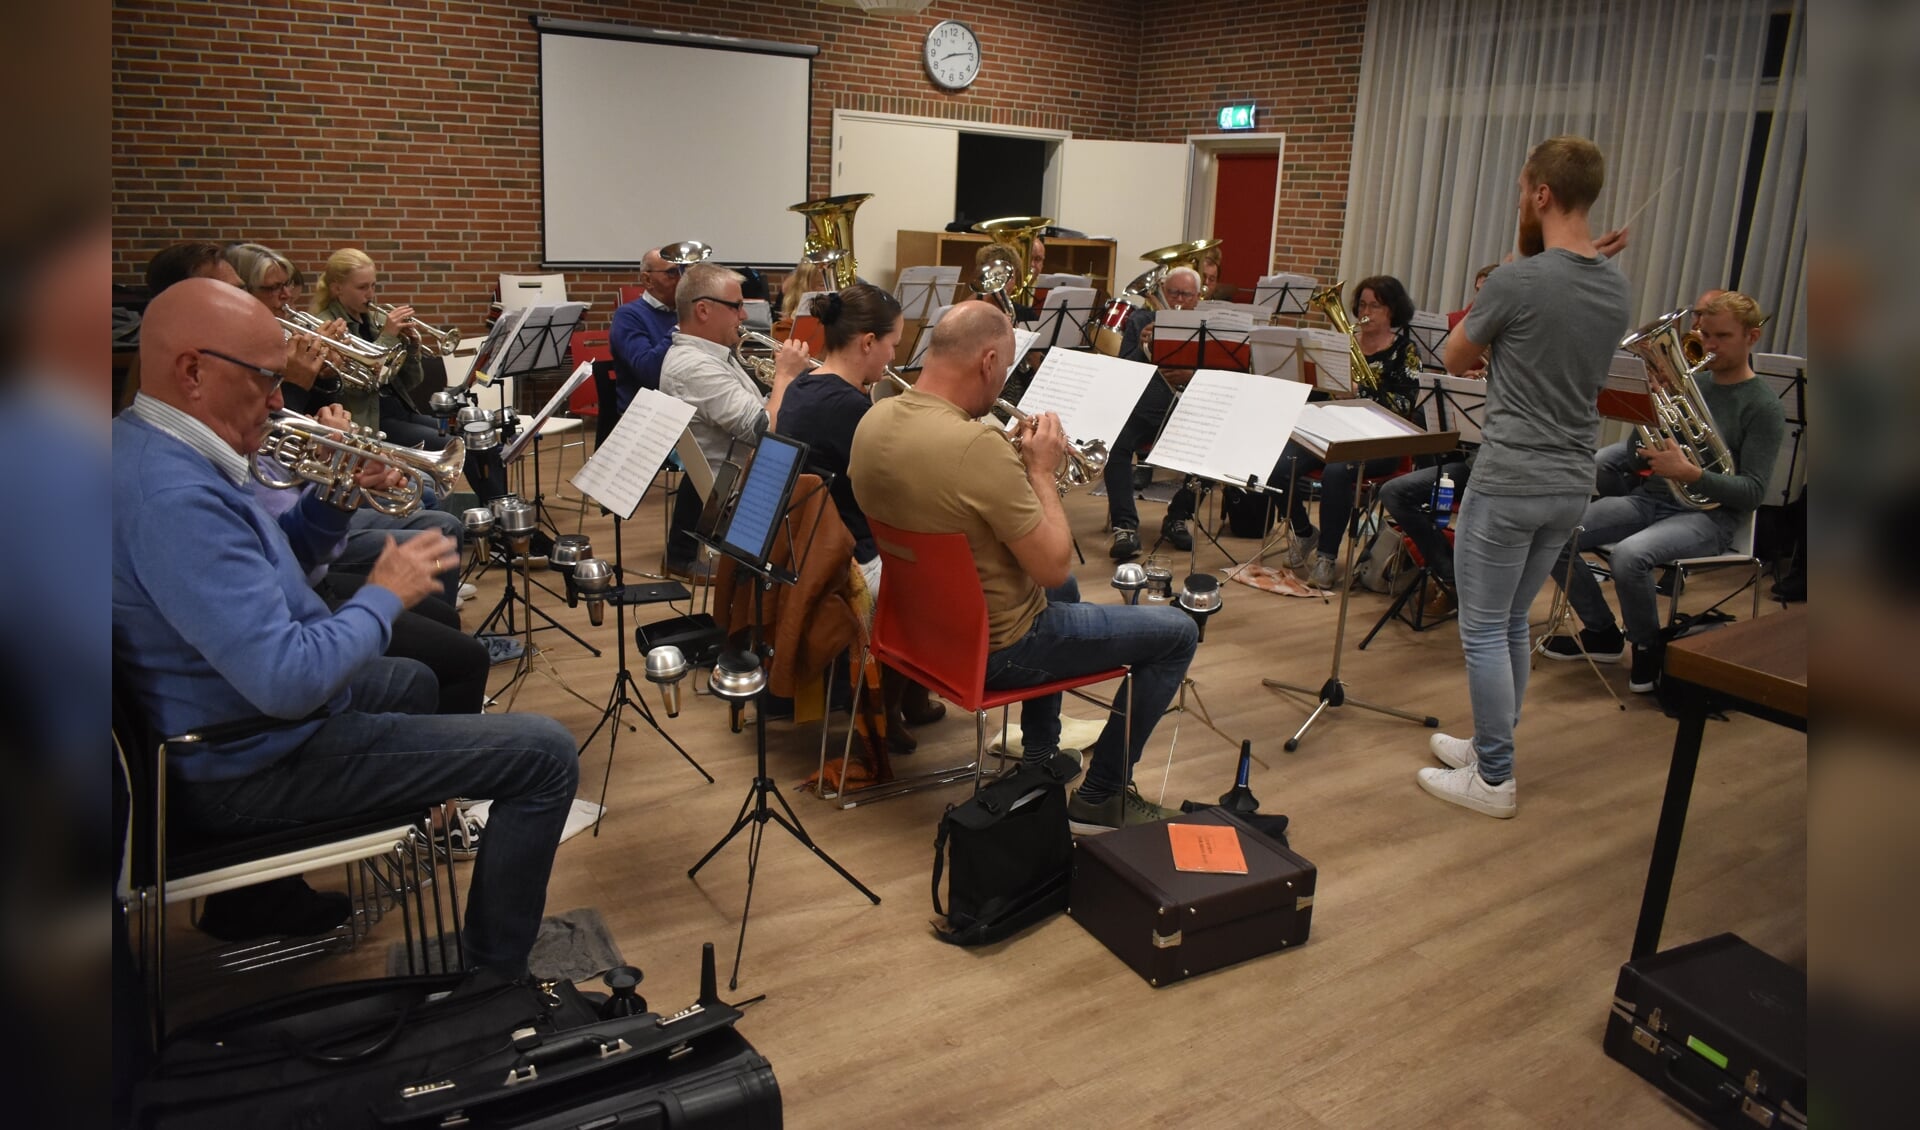 Brassband Halleluja repeteert in De Nije Kompe en viert daar donderdag 21 oktober het 100-jarig bestaan. Staand dirigent Chris van der Veen uit Ternaard.